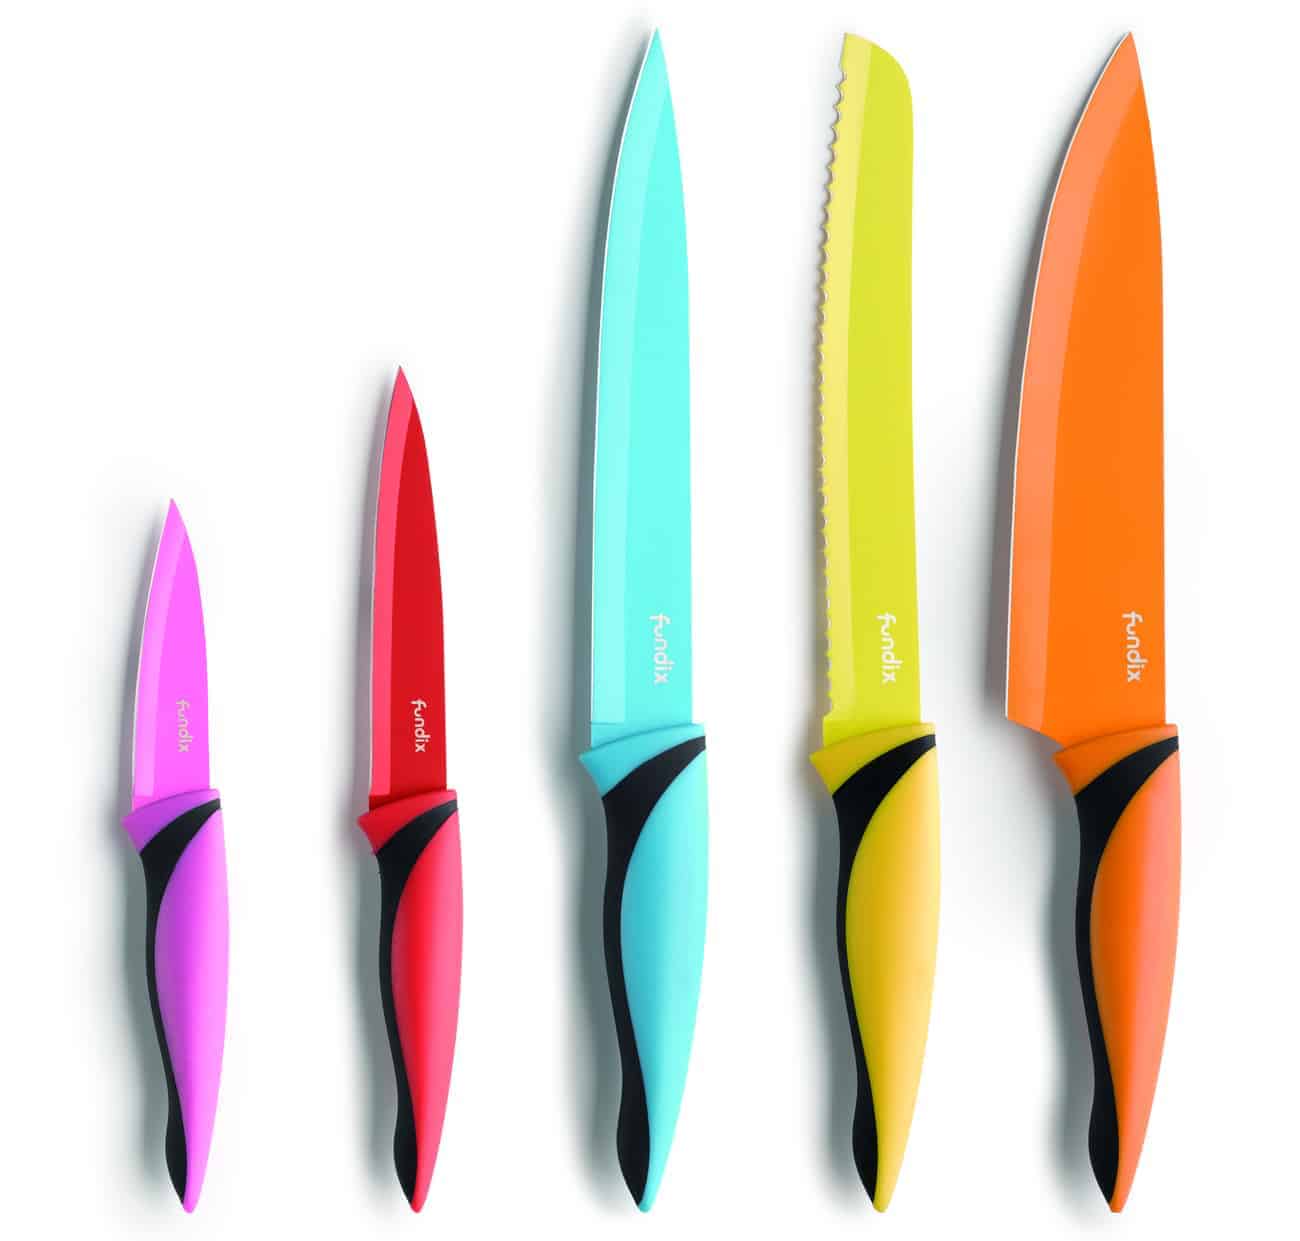 Conjunto 5 cuchillos Castey Cuchillos de cocina